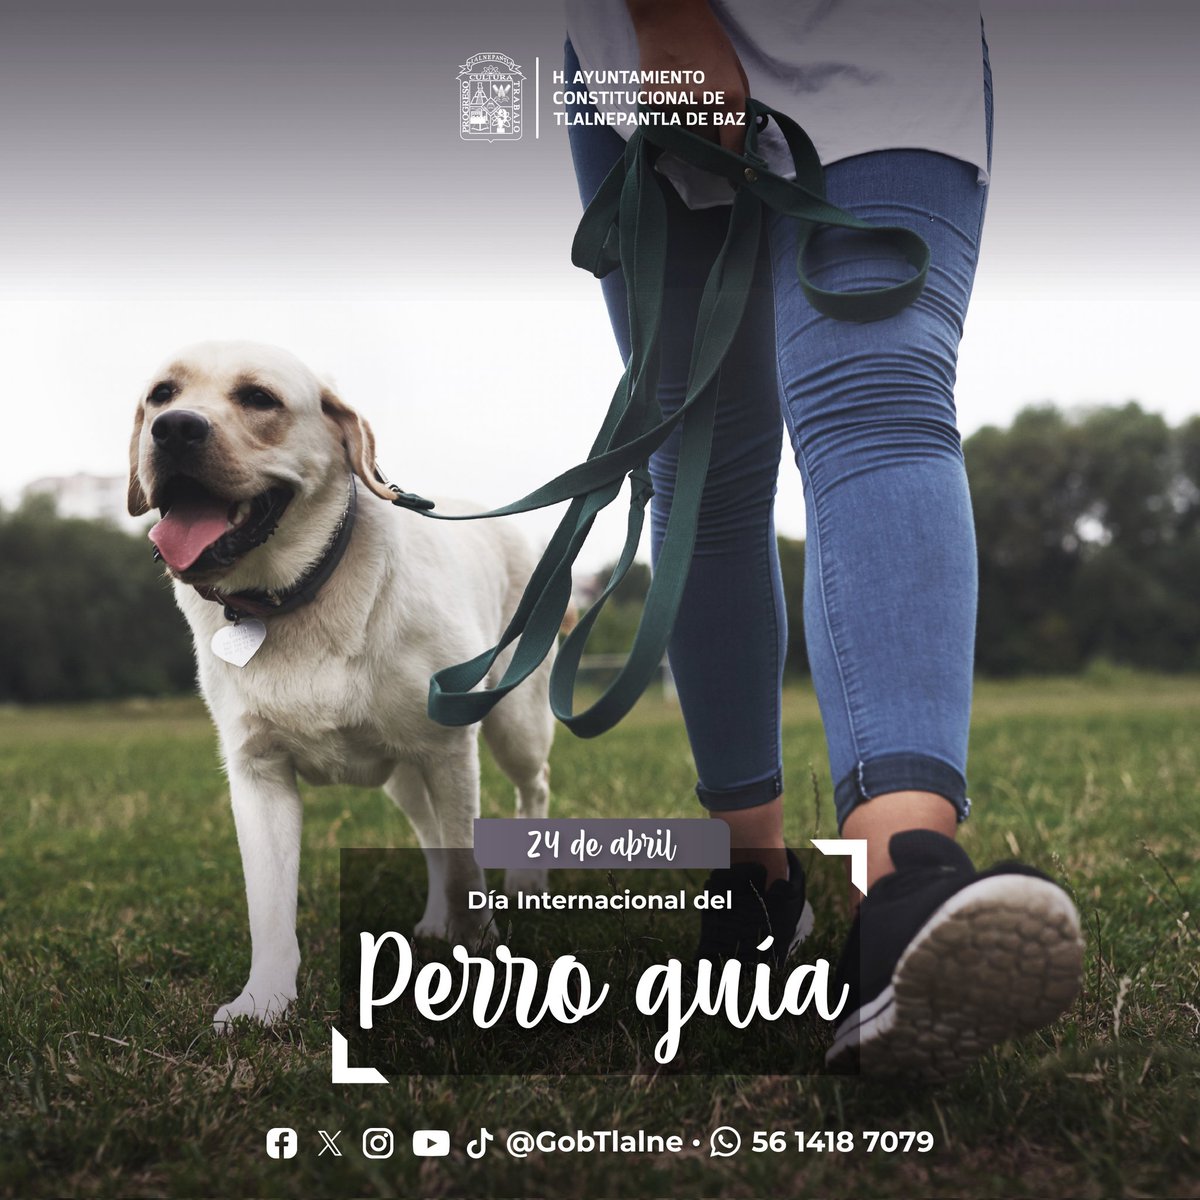 Este día celebramos y reconocemos la labor que realizan los perros guía; ya que, gracias a su apoyo y soporte, las personas con discapacidad visual tienen mejor movilidad y mayor independencia. #DíaInternacionalDelPerroGuía #Tlalnepantla